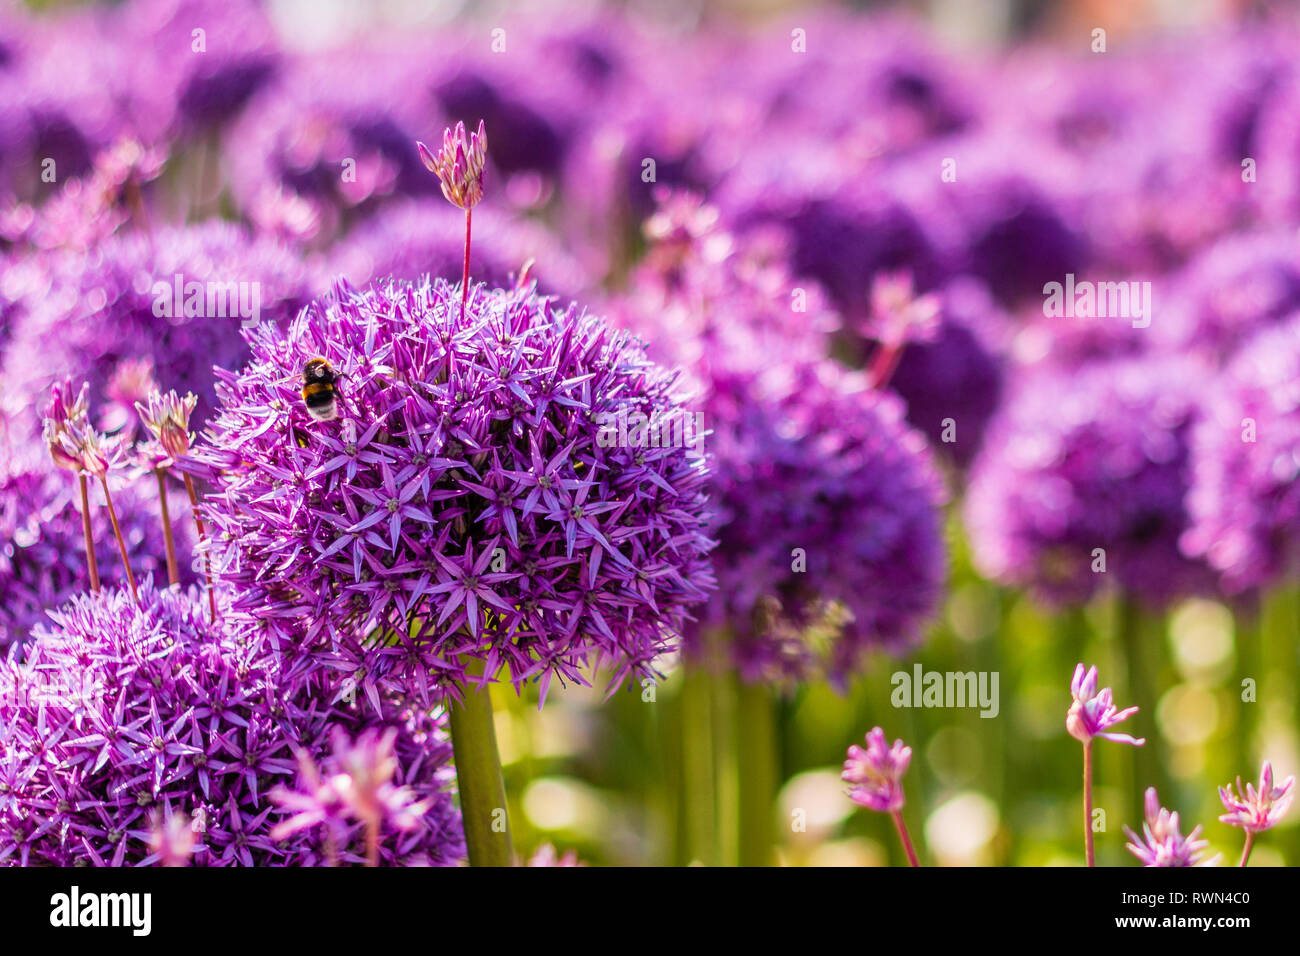 Hummel auf der wunderschönen violetten Stern-beschmutzte Lauch Stockfoto